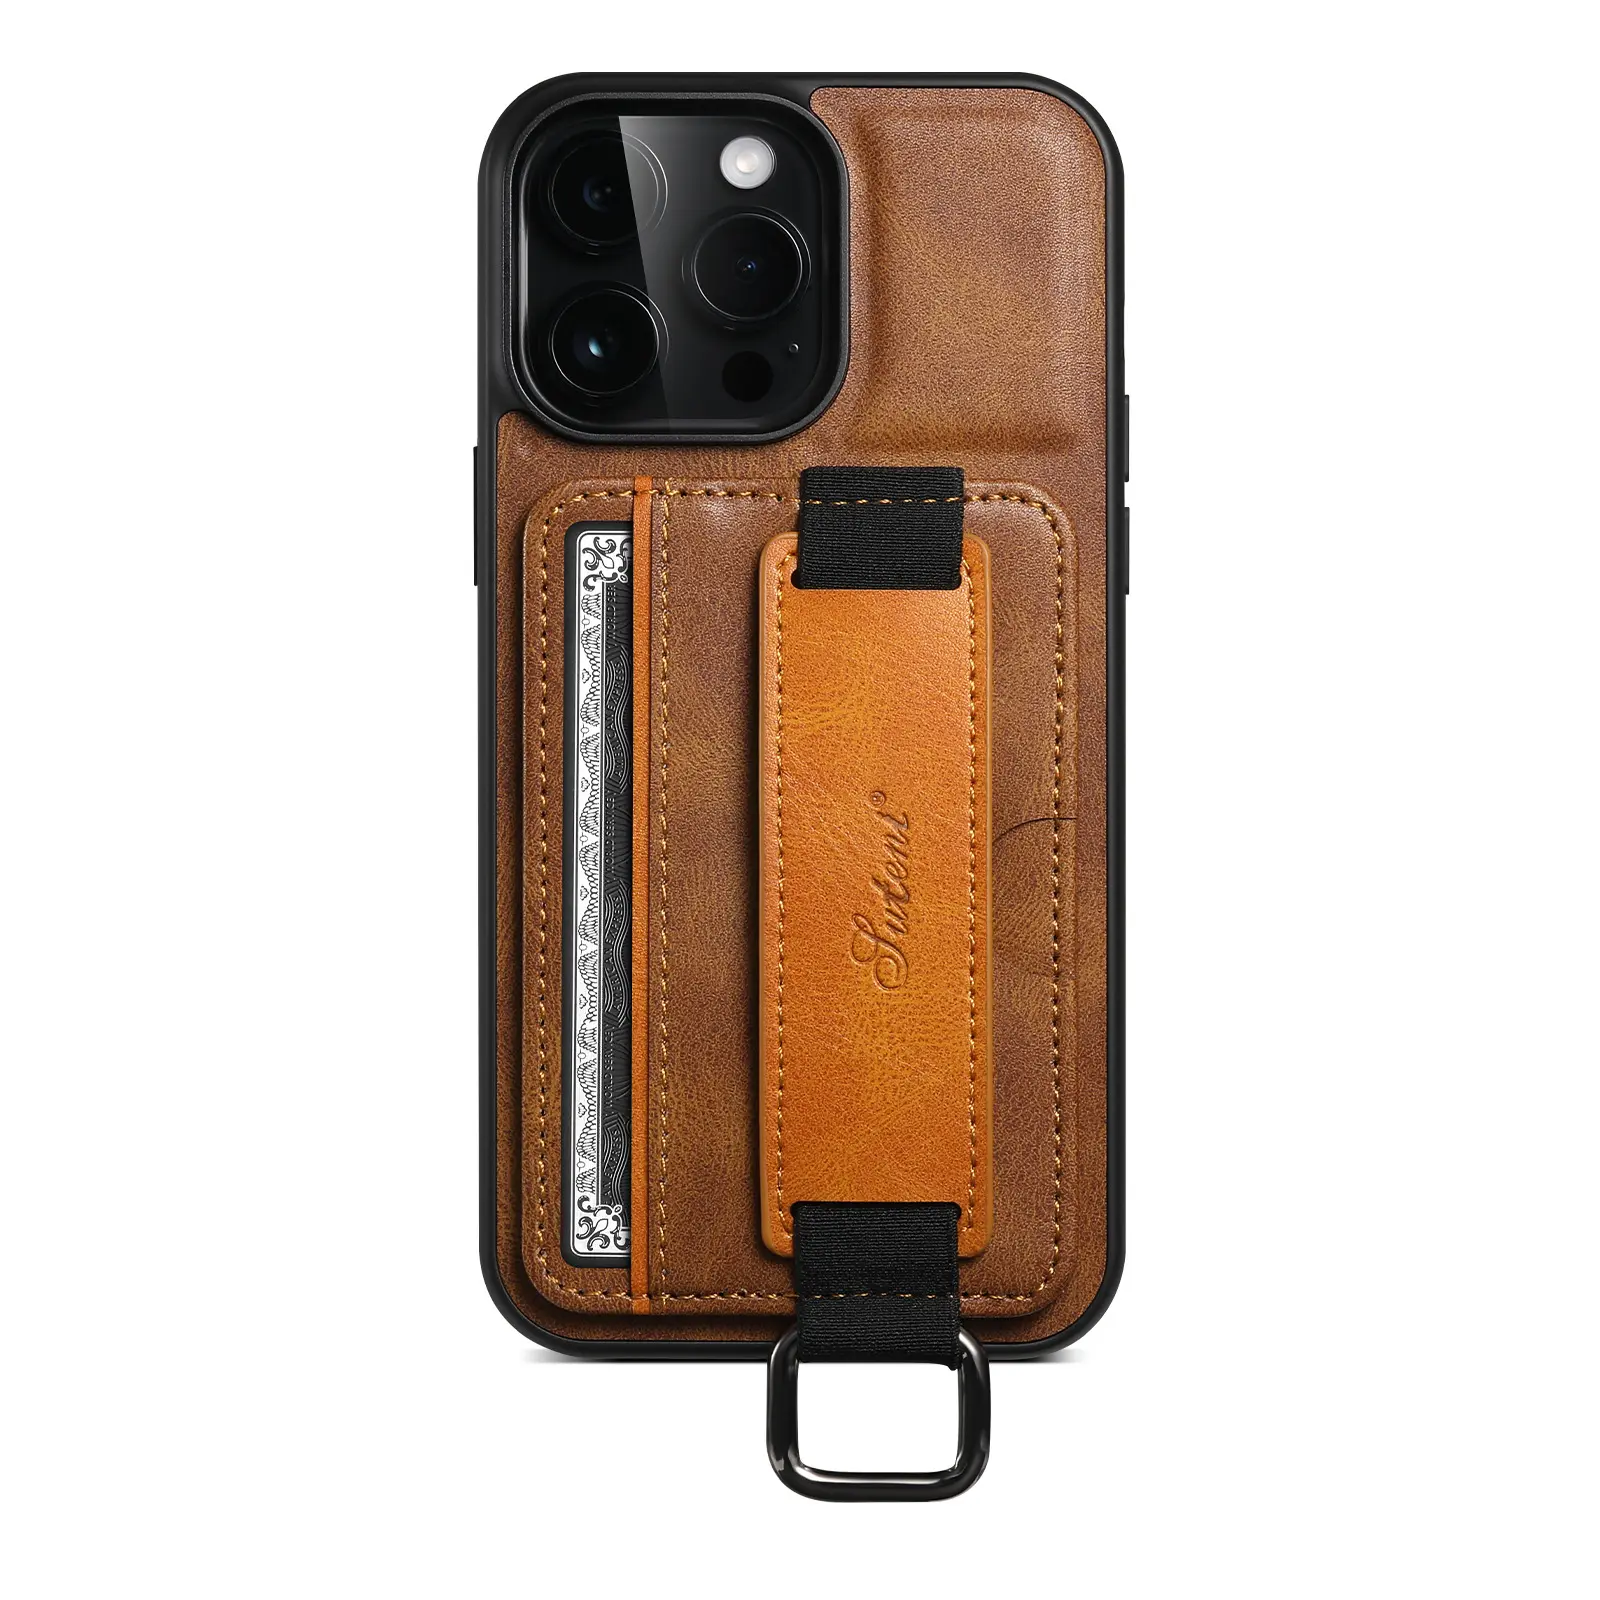 थोक फोन के मामले में कार्ड डालने बटुआ बैग कवर अंगूठी लोचदार कलाई का पट्टा धारक पु चमड़े फोन के मामले में Iphone के लिए 14 promax